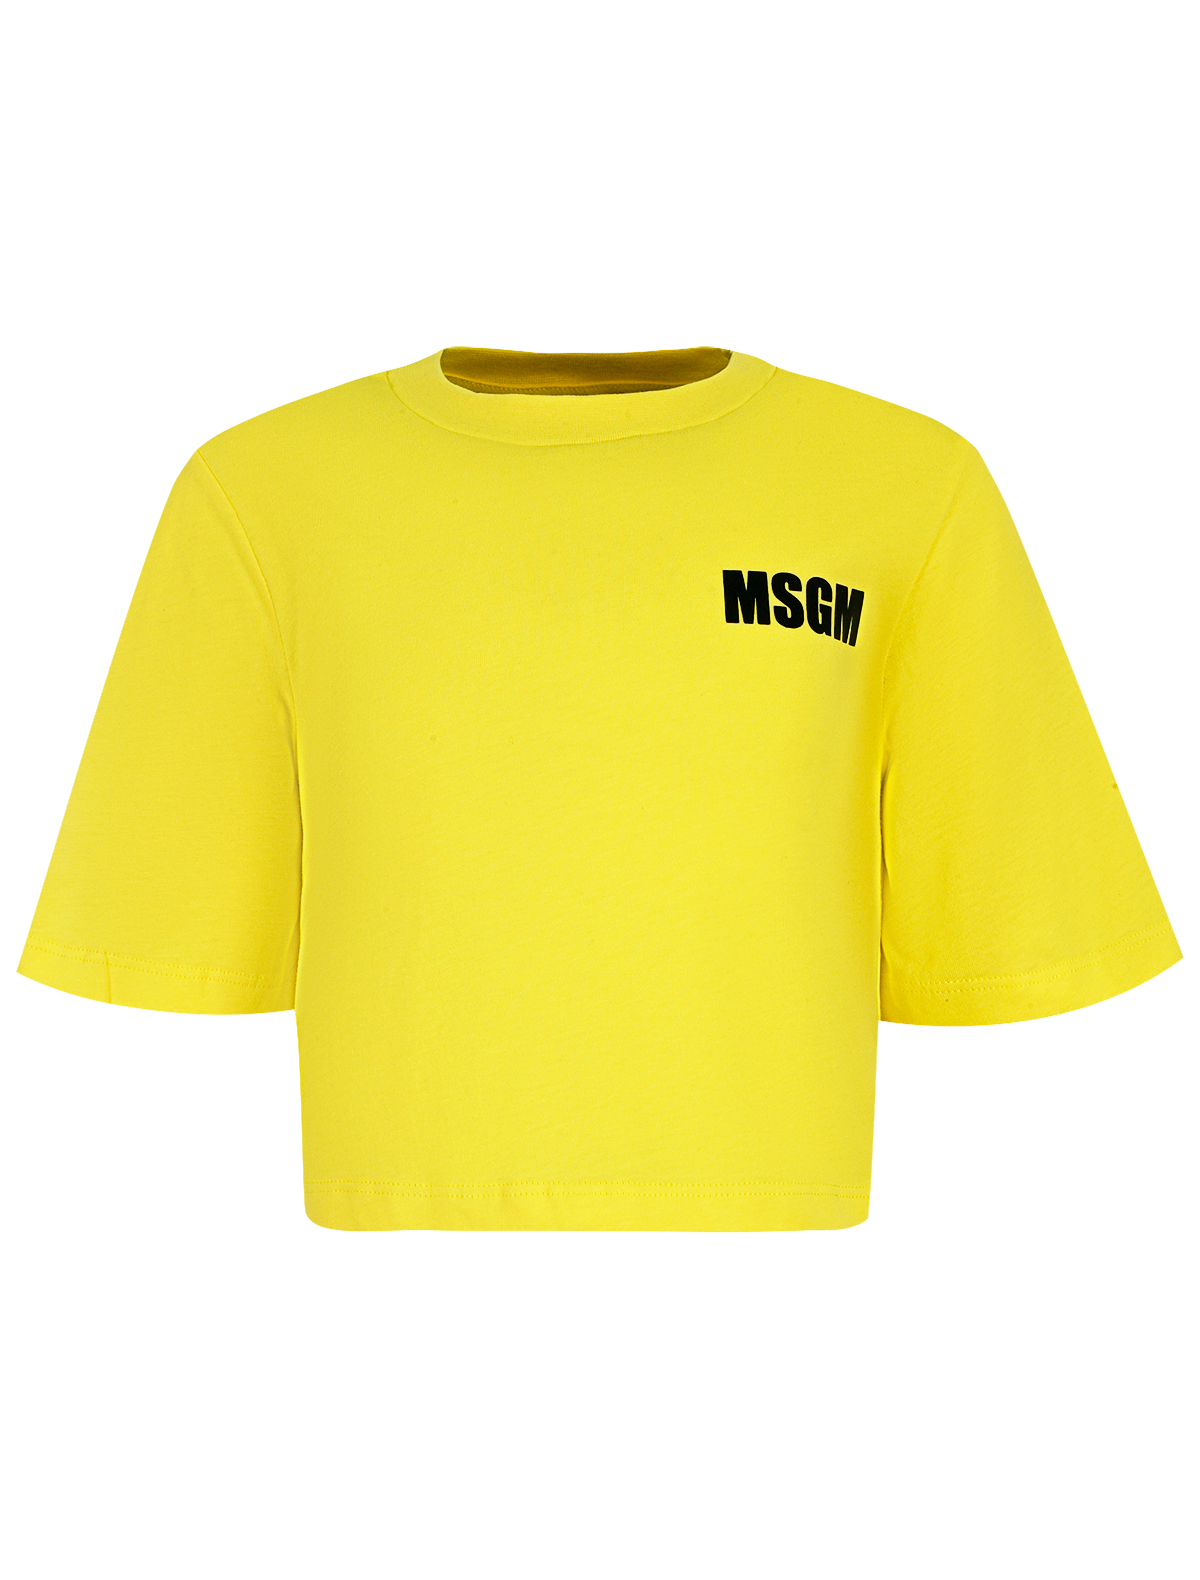 футболка msgm для девочки, желтая